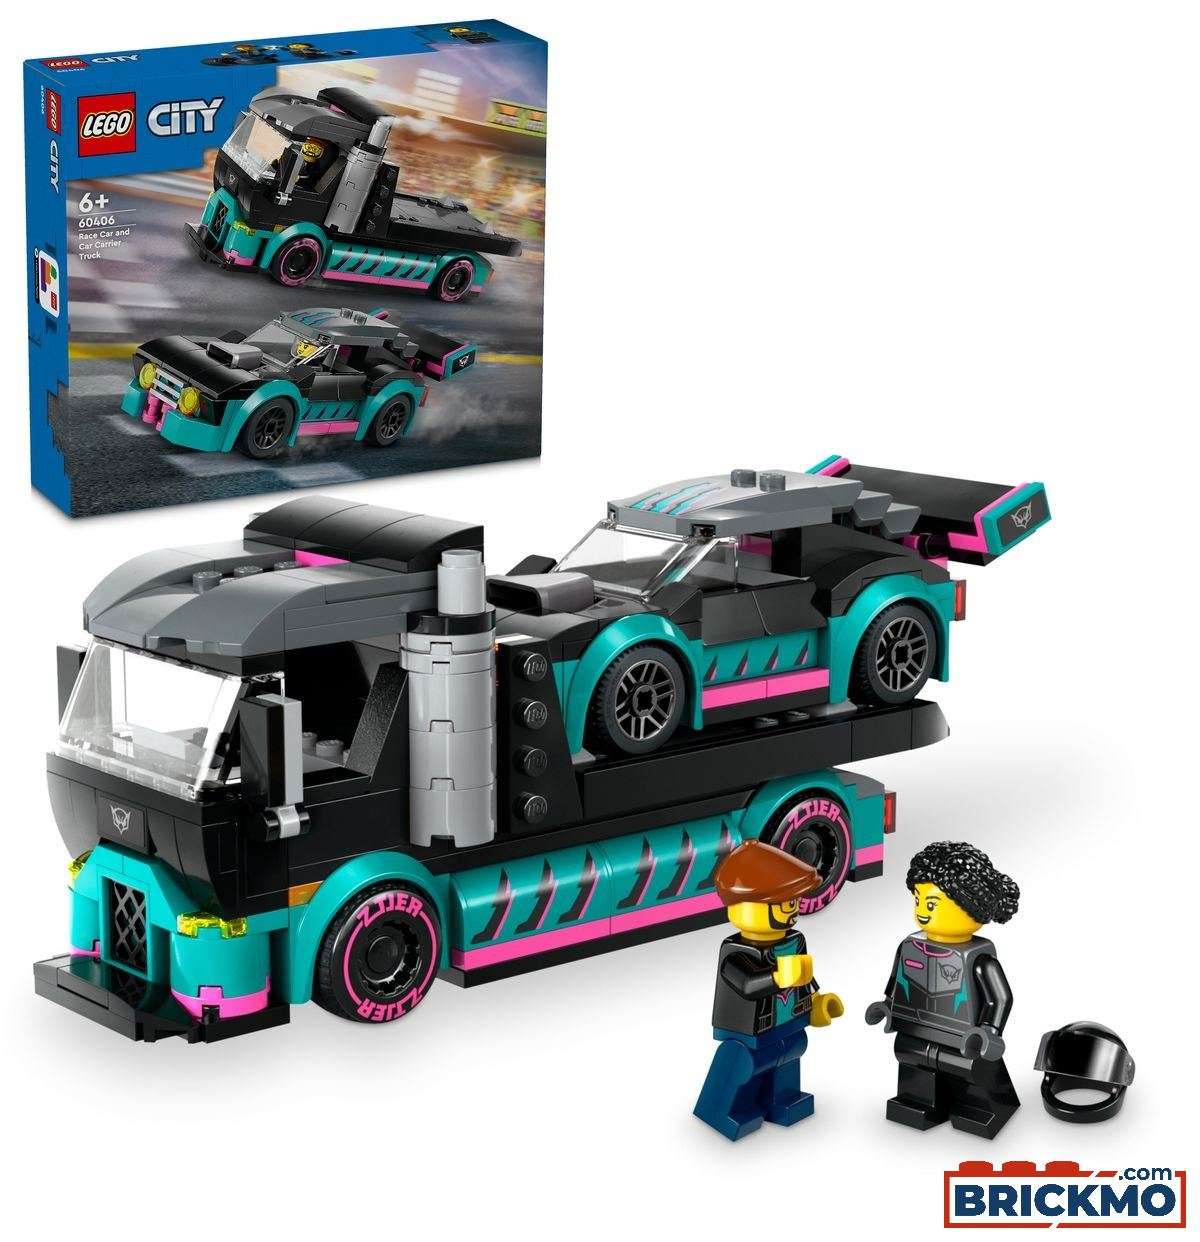 LEGO City 60406 Versenyautó és autószállító teherautó 60406